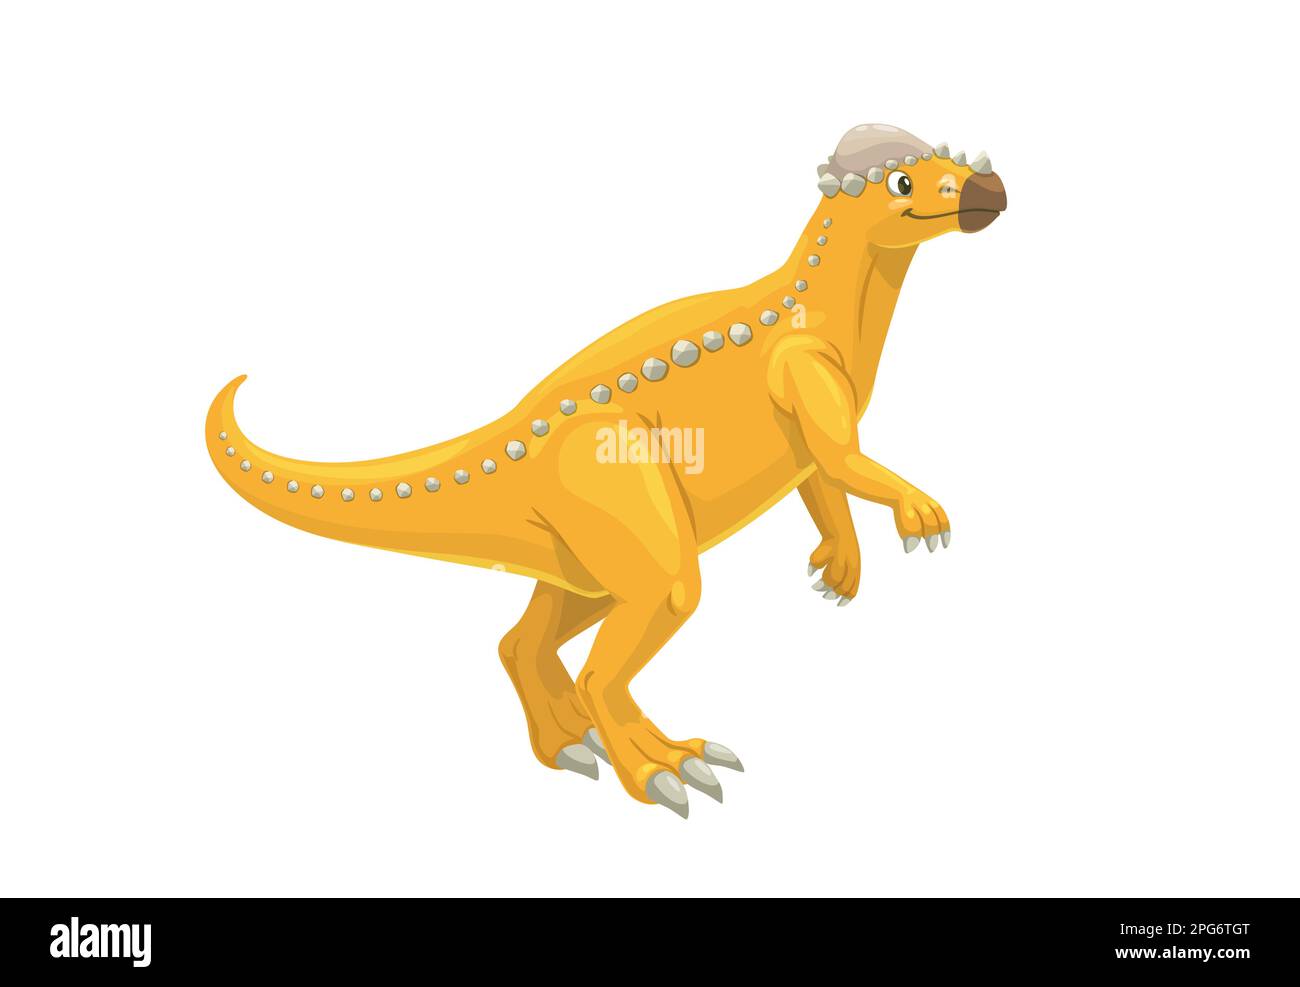 Cartone animato pachycephalosaurus dinosauro carattere. Uccello ornitischiano erbivoro vettore isolato con testa spessa. Animale preistorico vissuto du Illustrazione Vettoriale